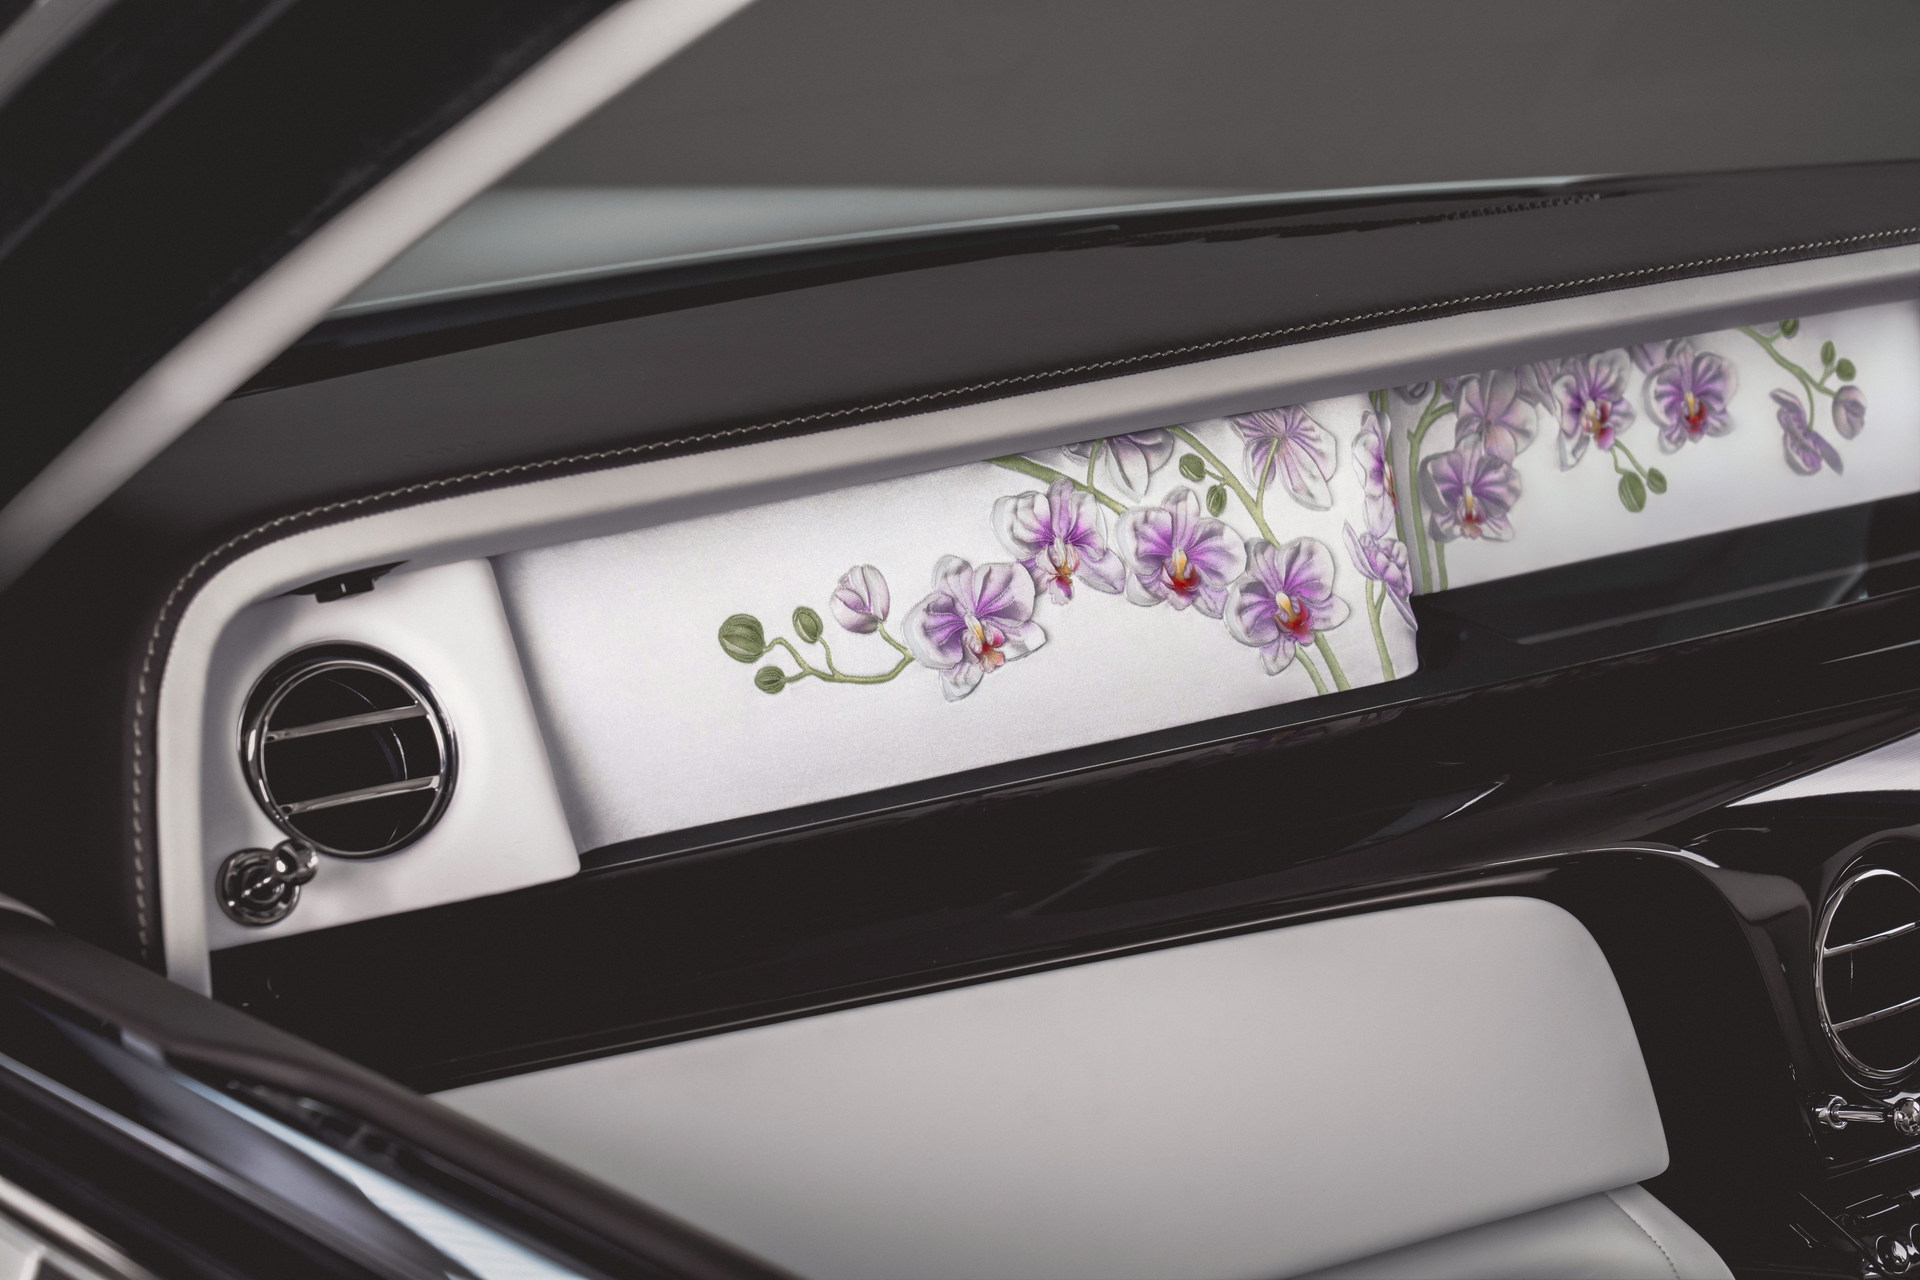 Rolls-Royce Phantom Orchid phiên bản one-off dành cho đại gia thích chơi hoa lan rolls-royce-phantom-orchid-16.jpg